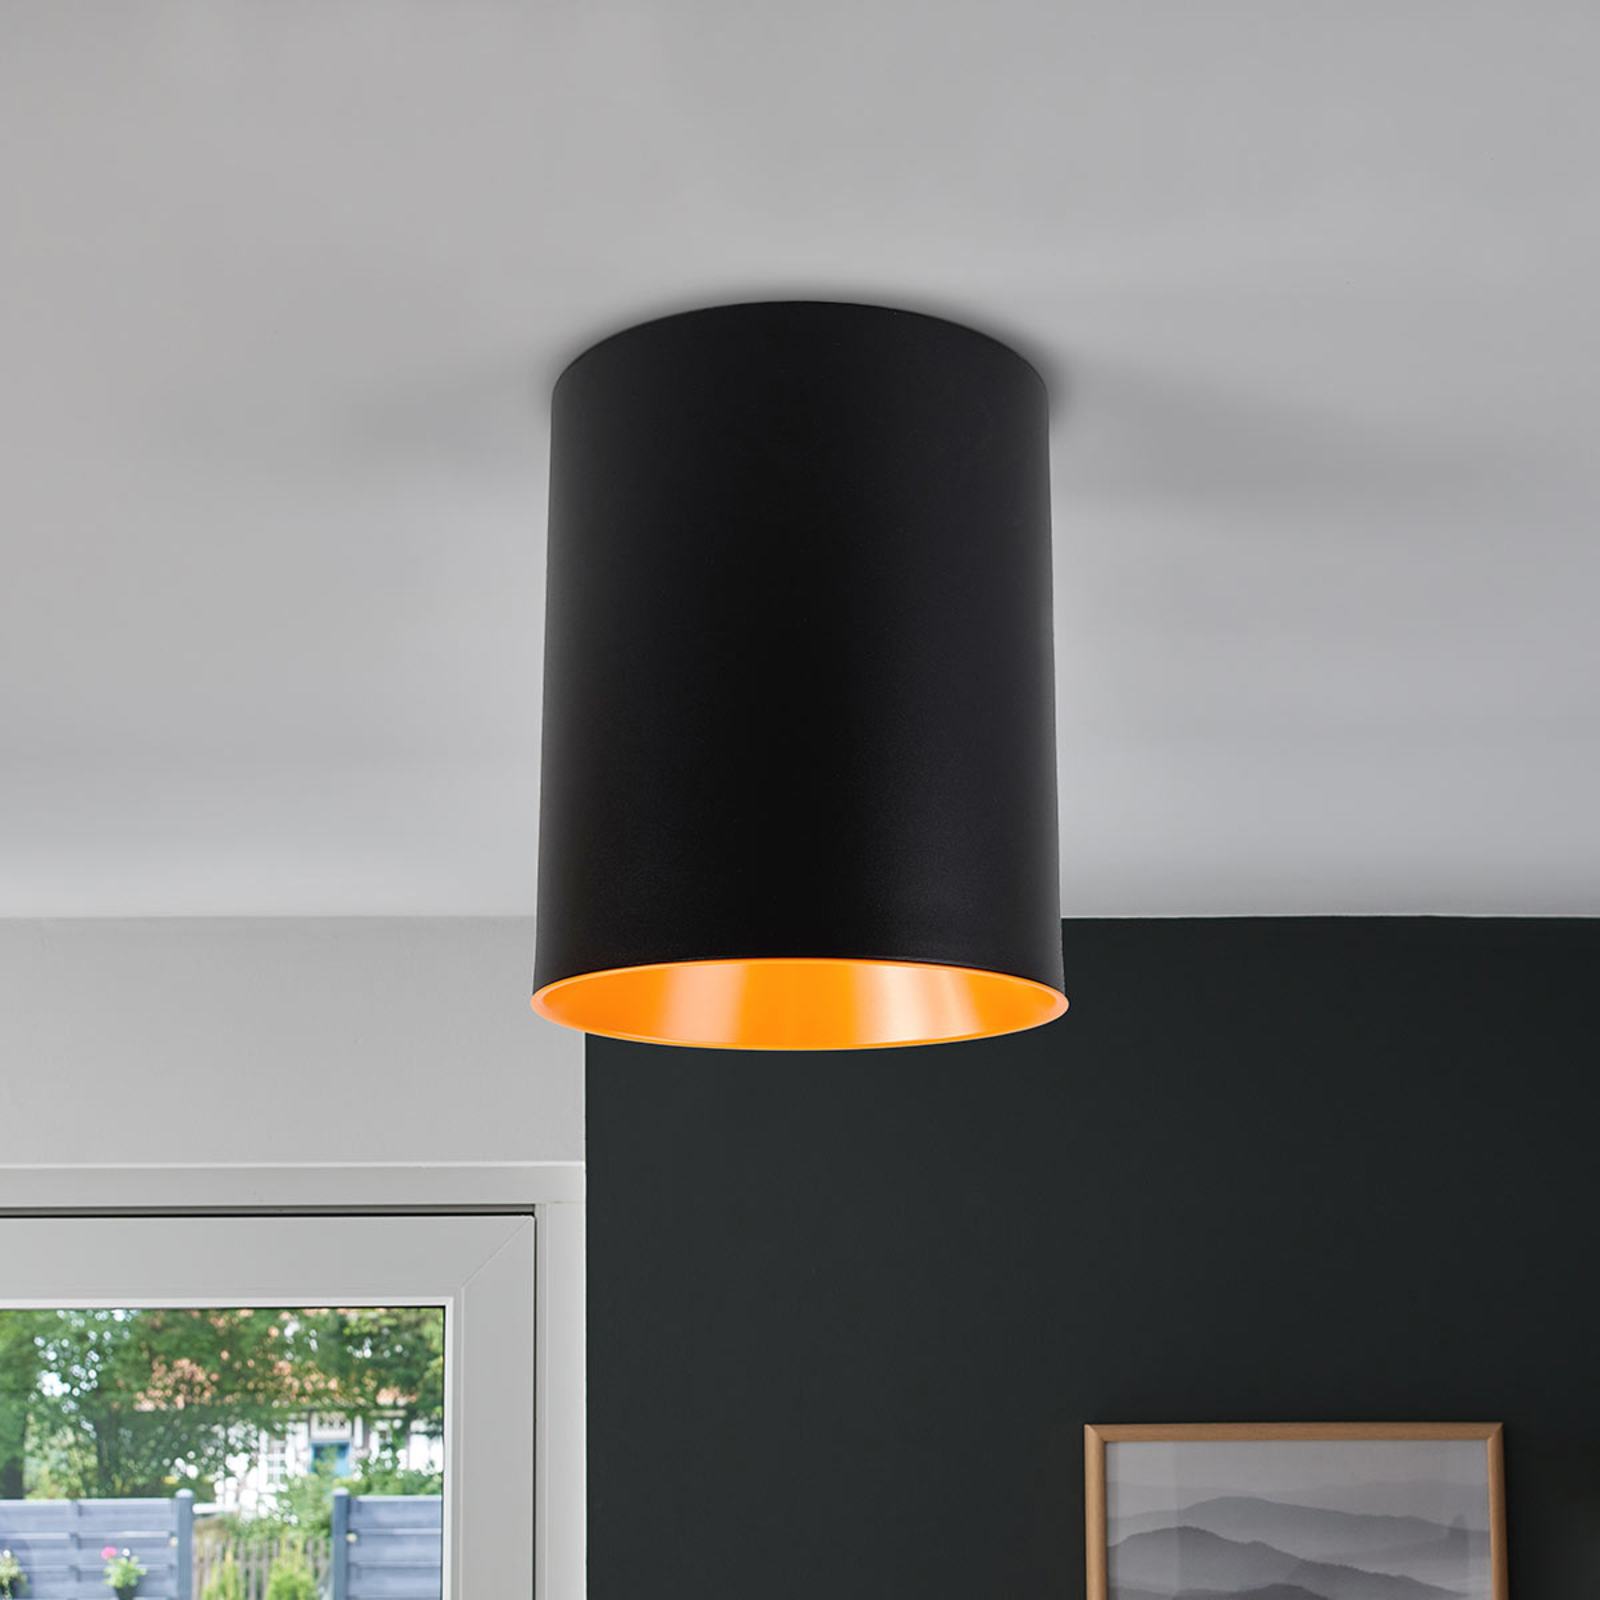 Tagora designer LED ceiling light, cylinder